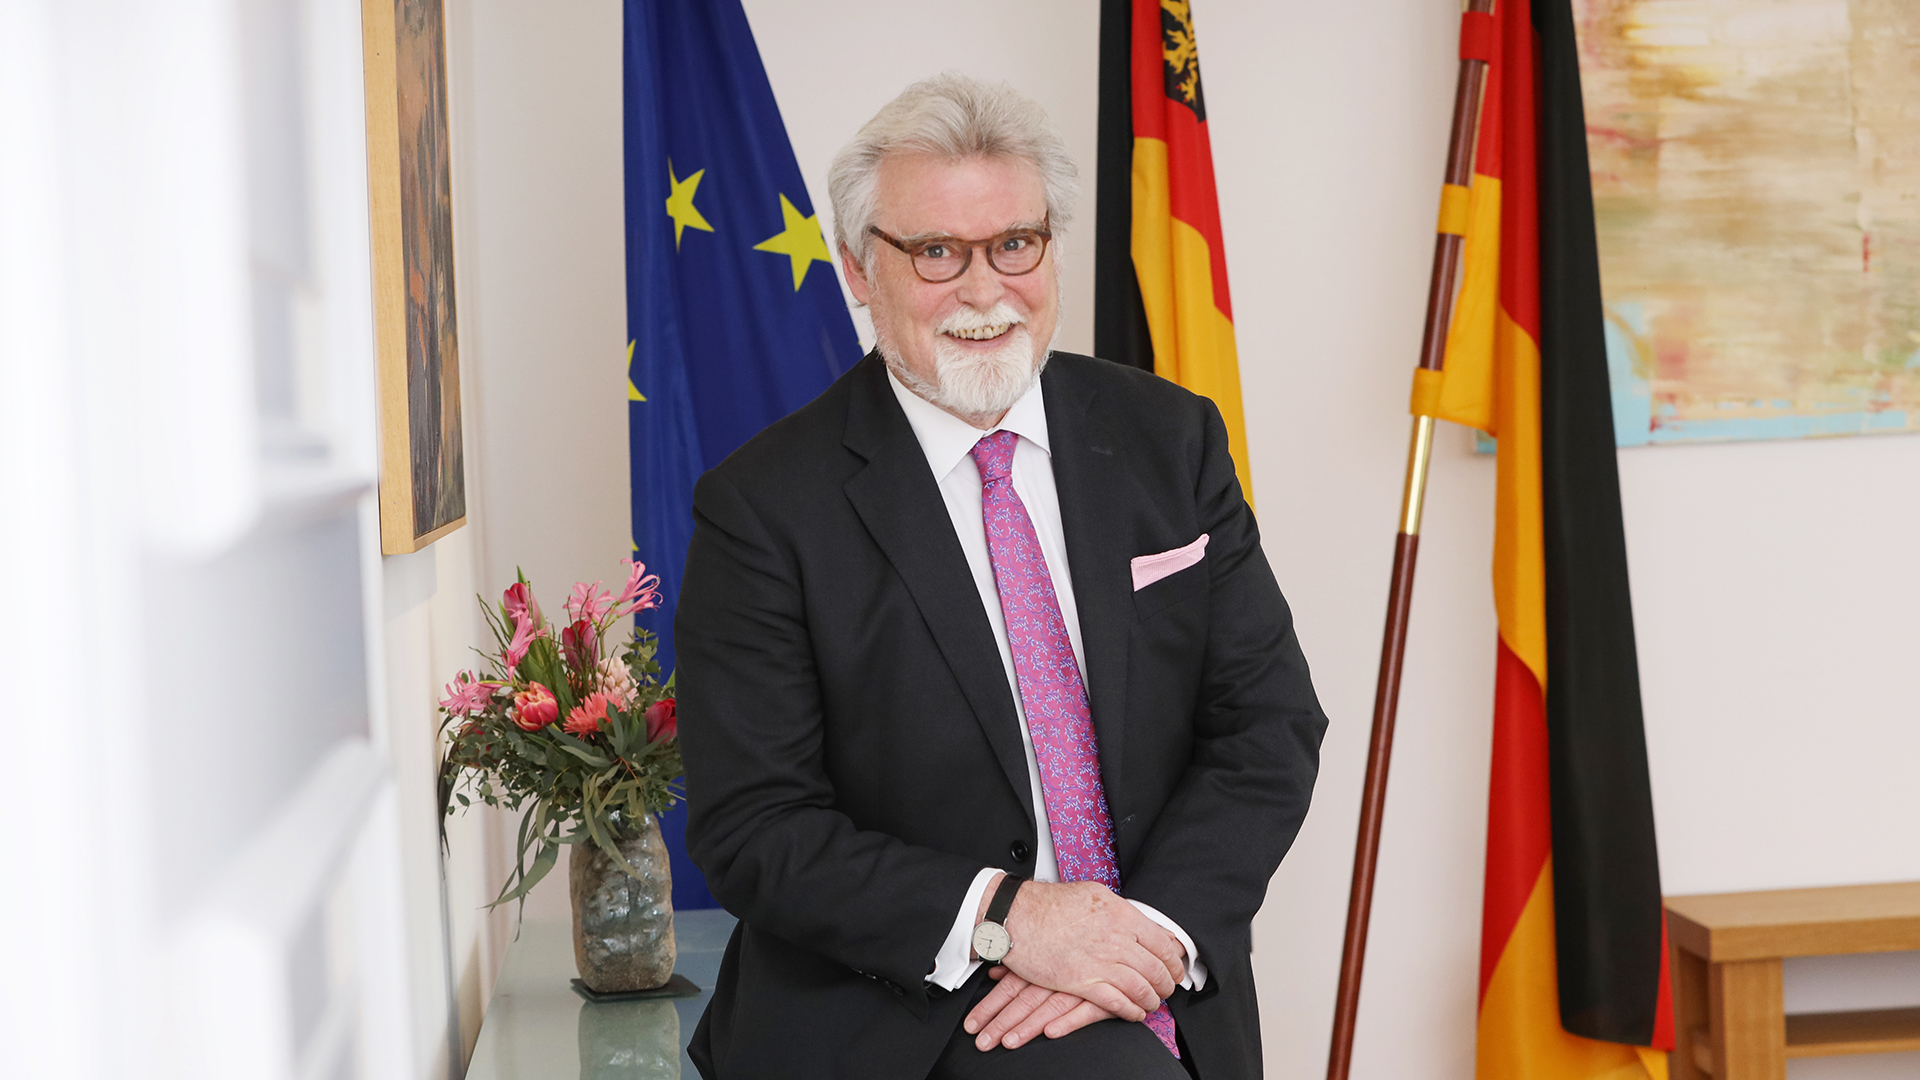 Justizminister Herbert Mertin auf einem Sideboard sitzend, im Hintergrund Fahnen (v.l.n.r.: Europa, Rheinland-Pfalz, Deutschland)